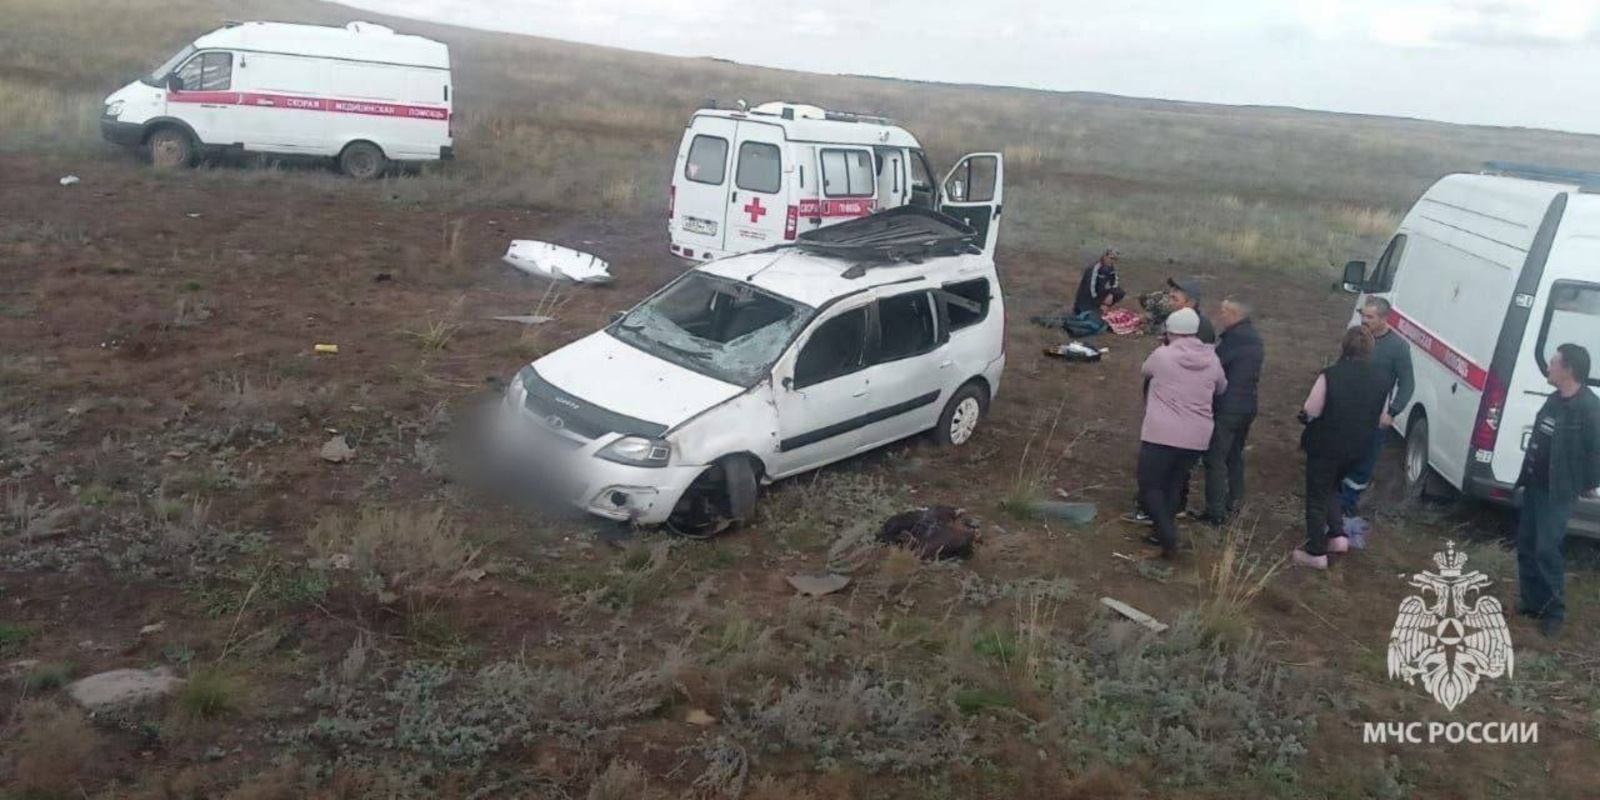 В Башкирии пьяный водитель «Ларгуса» погубил в ДТП пассажира, пятеро госпитализированы